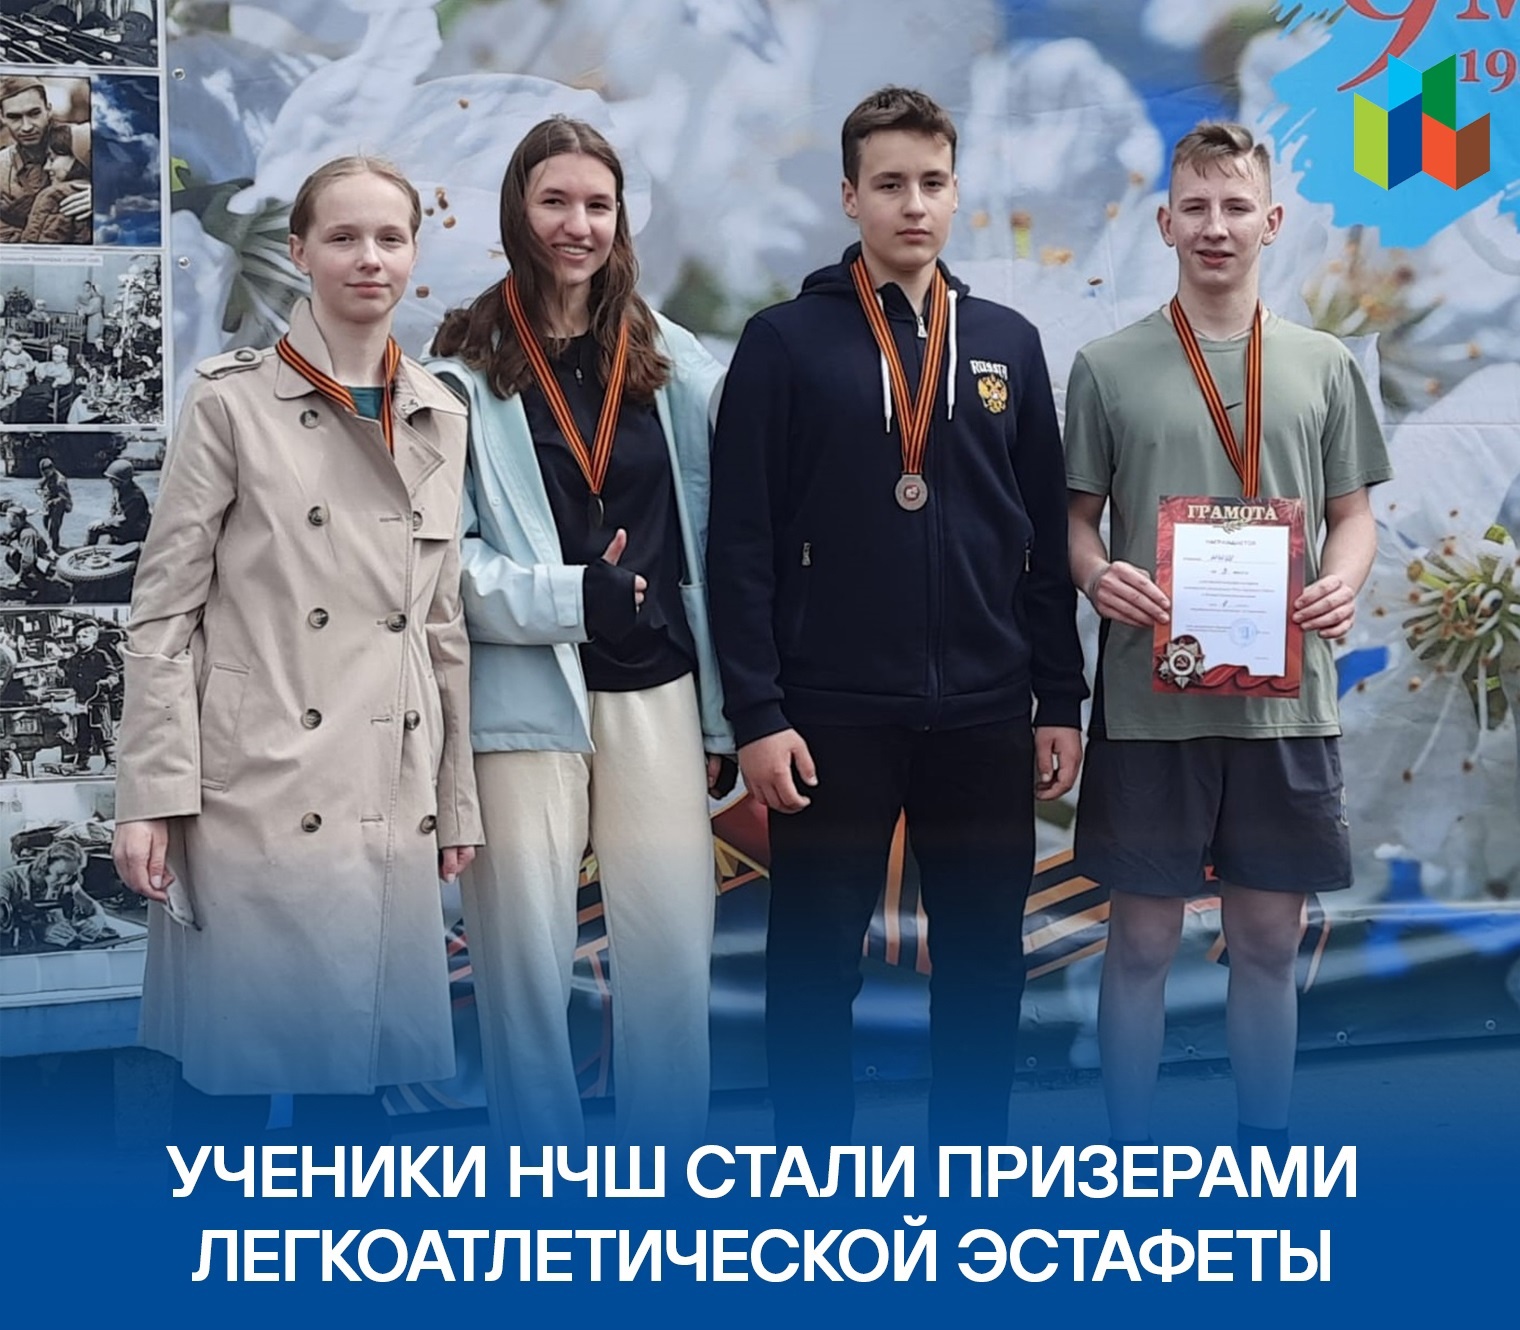 Ученики НЧШ стали призерами окружной легкоатлетической эстафеты